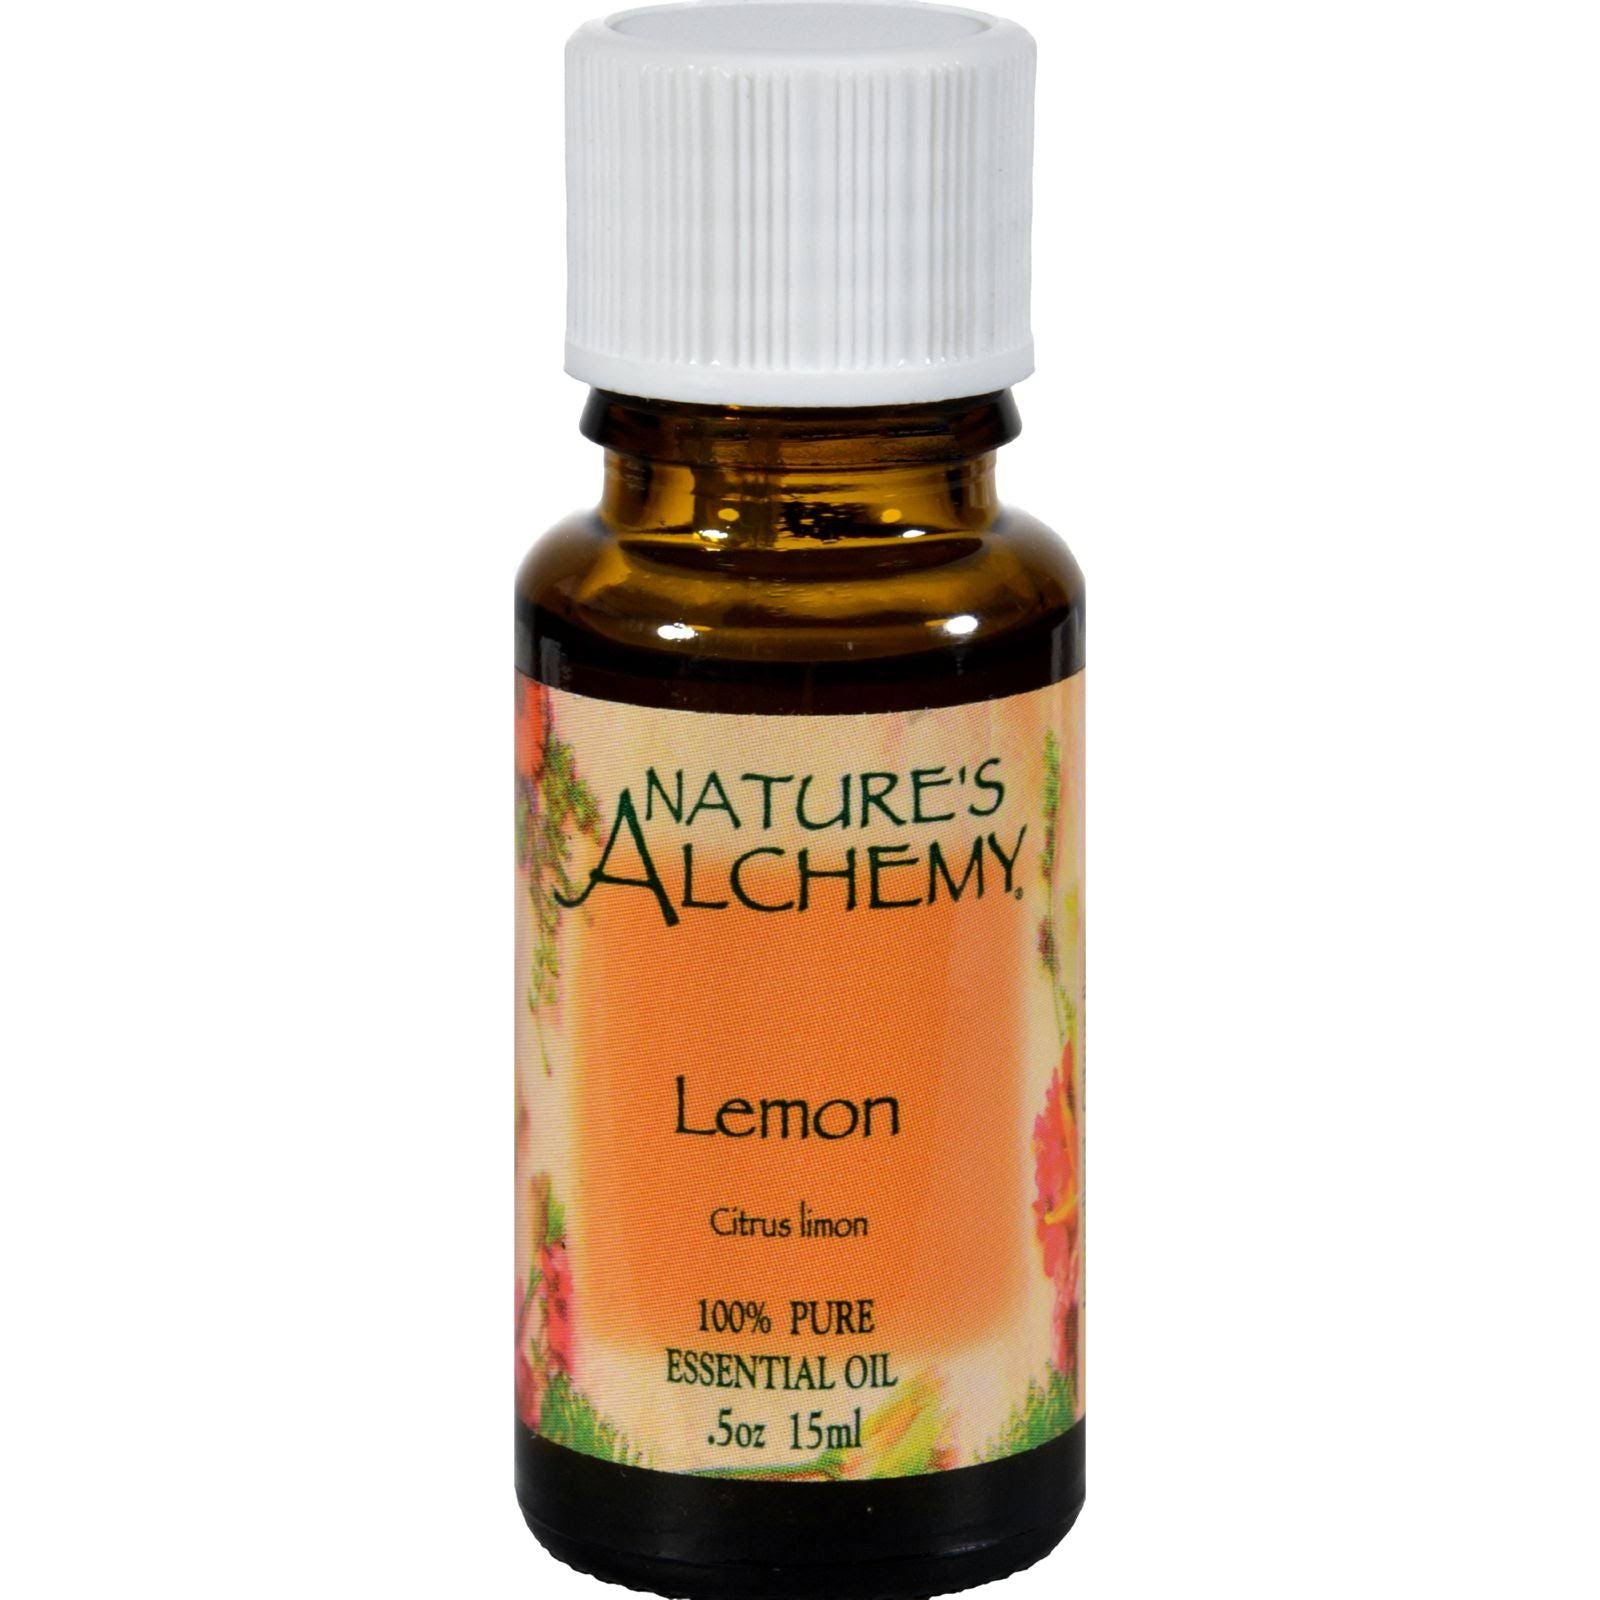 Nature's Alchemy Pure Essential Oil - Lemon, 0.5oz